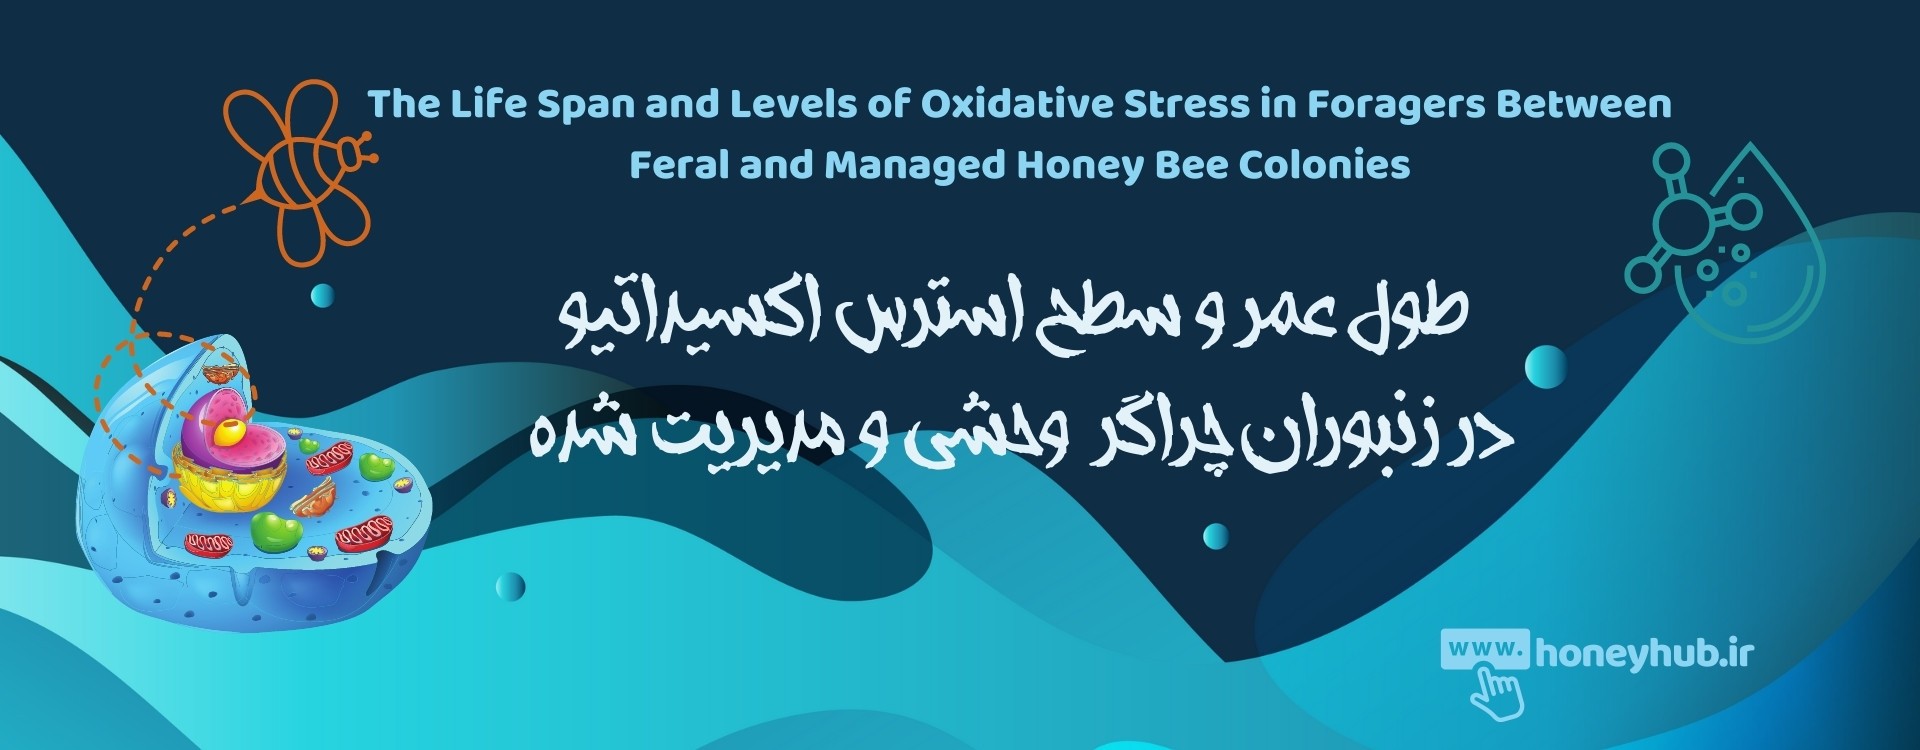 طول عمر و سطوح استرس اکسیداتیو در علوفه جویان بین کلنی های زنبور عسل وحشی و مدیریت شده